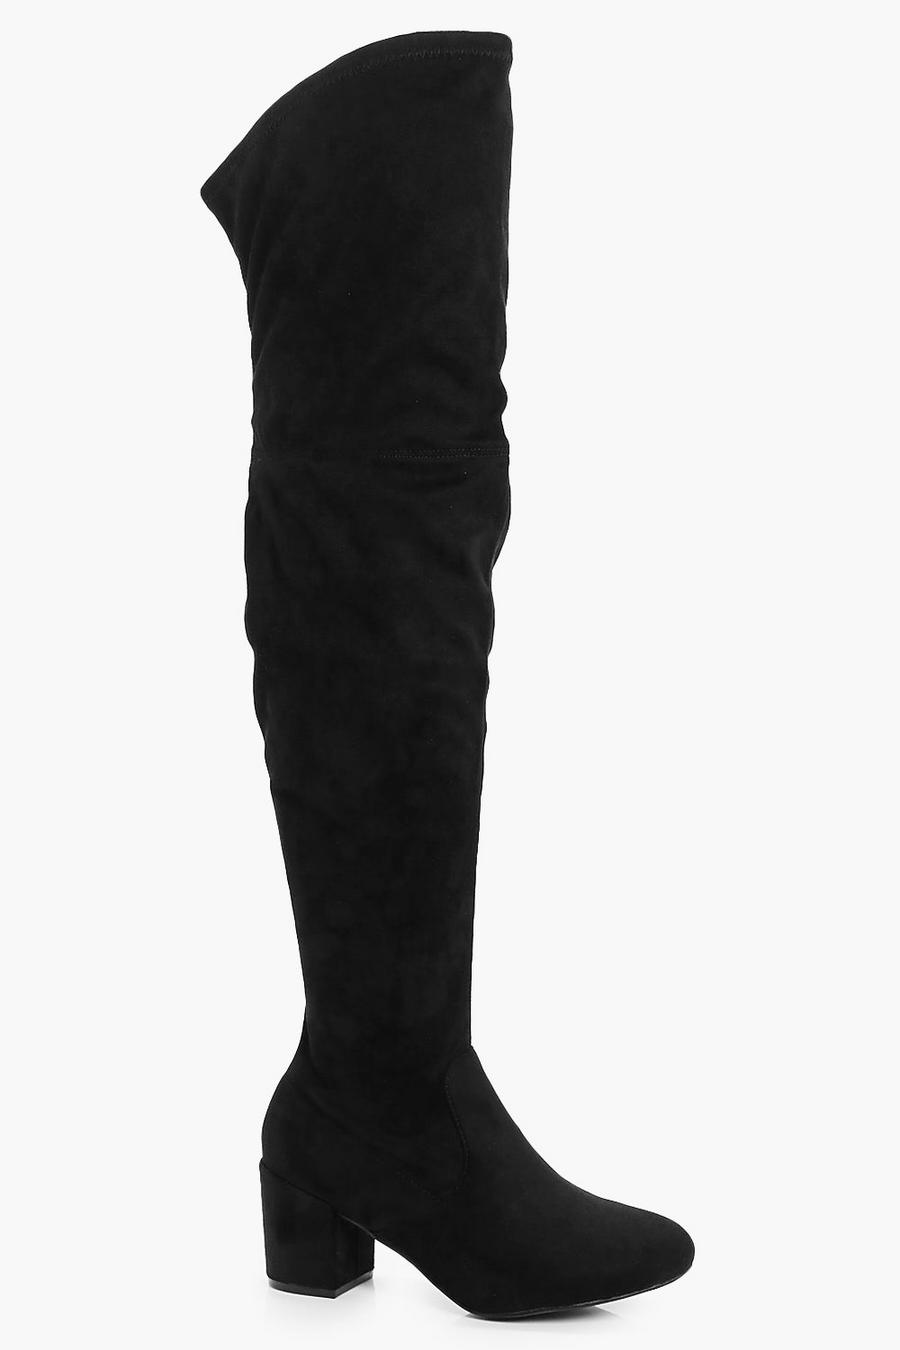 Botas anchas por encima de rodilla con tacón grueso, Negro image number 1